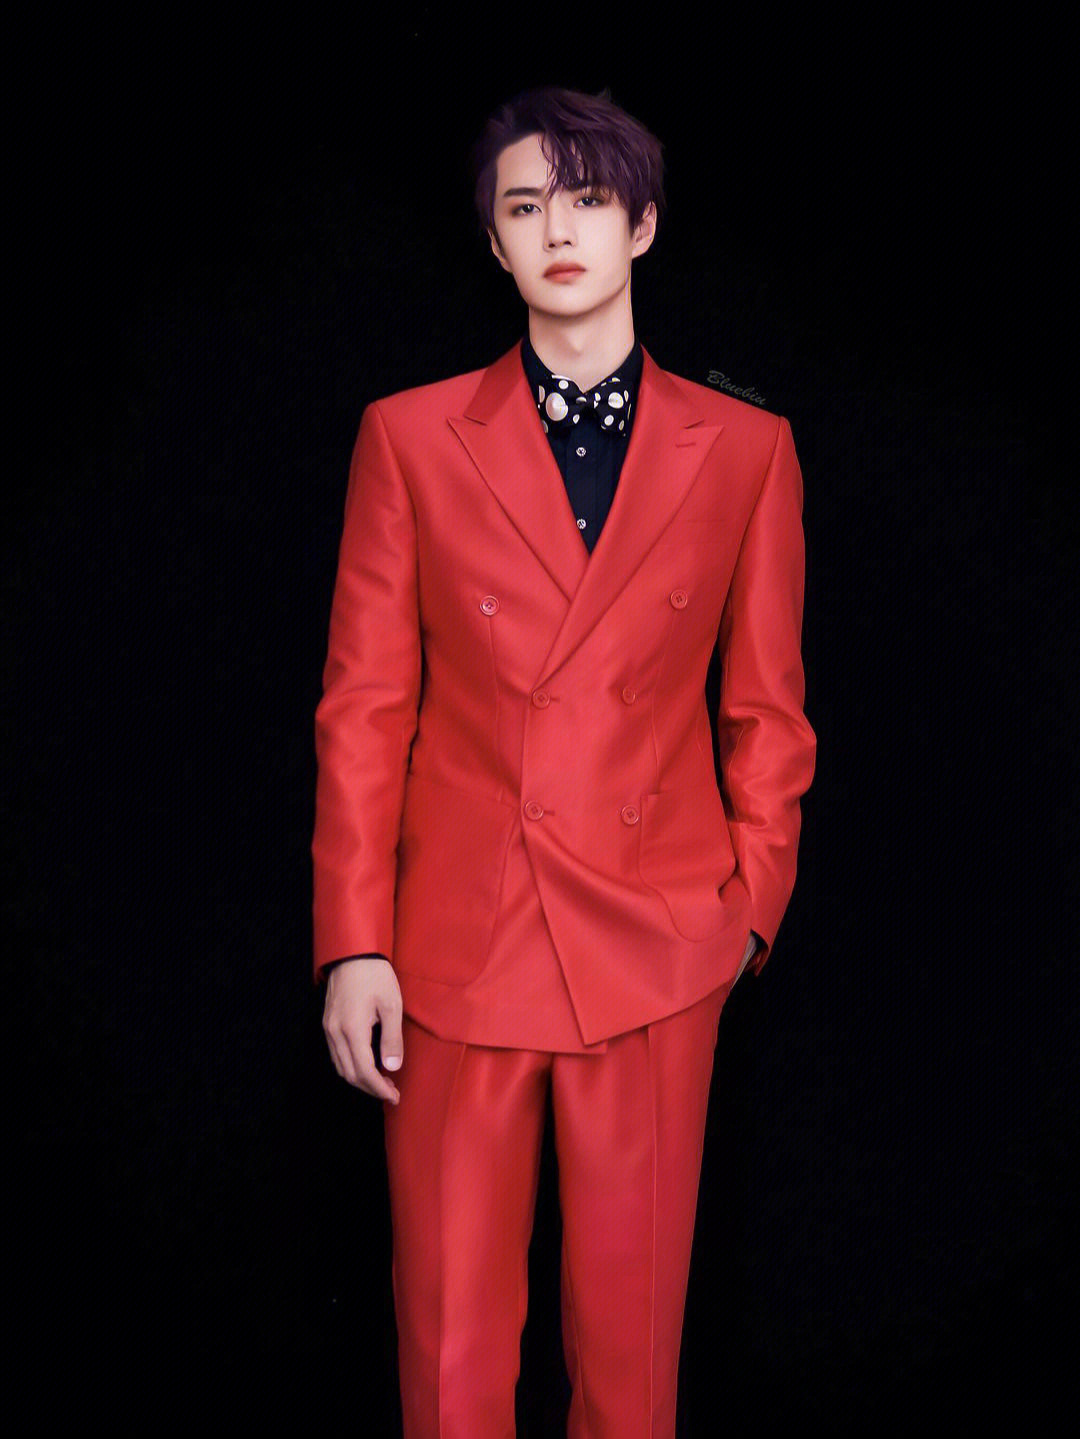 最喜欢这个红色西装的王漂亮#博肖#王一博